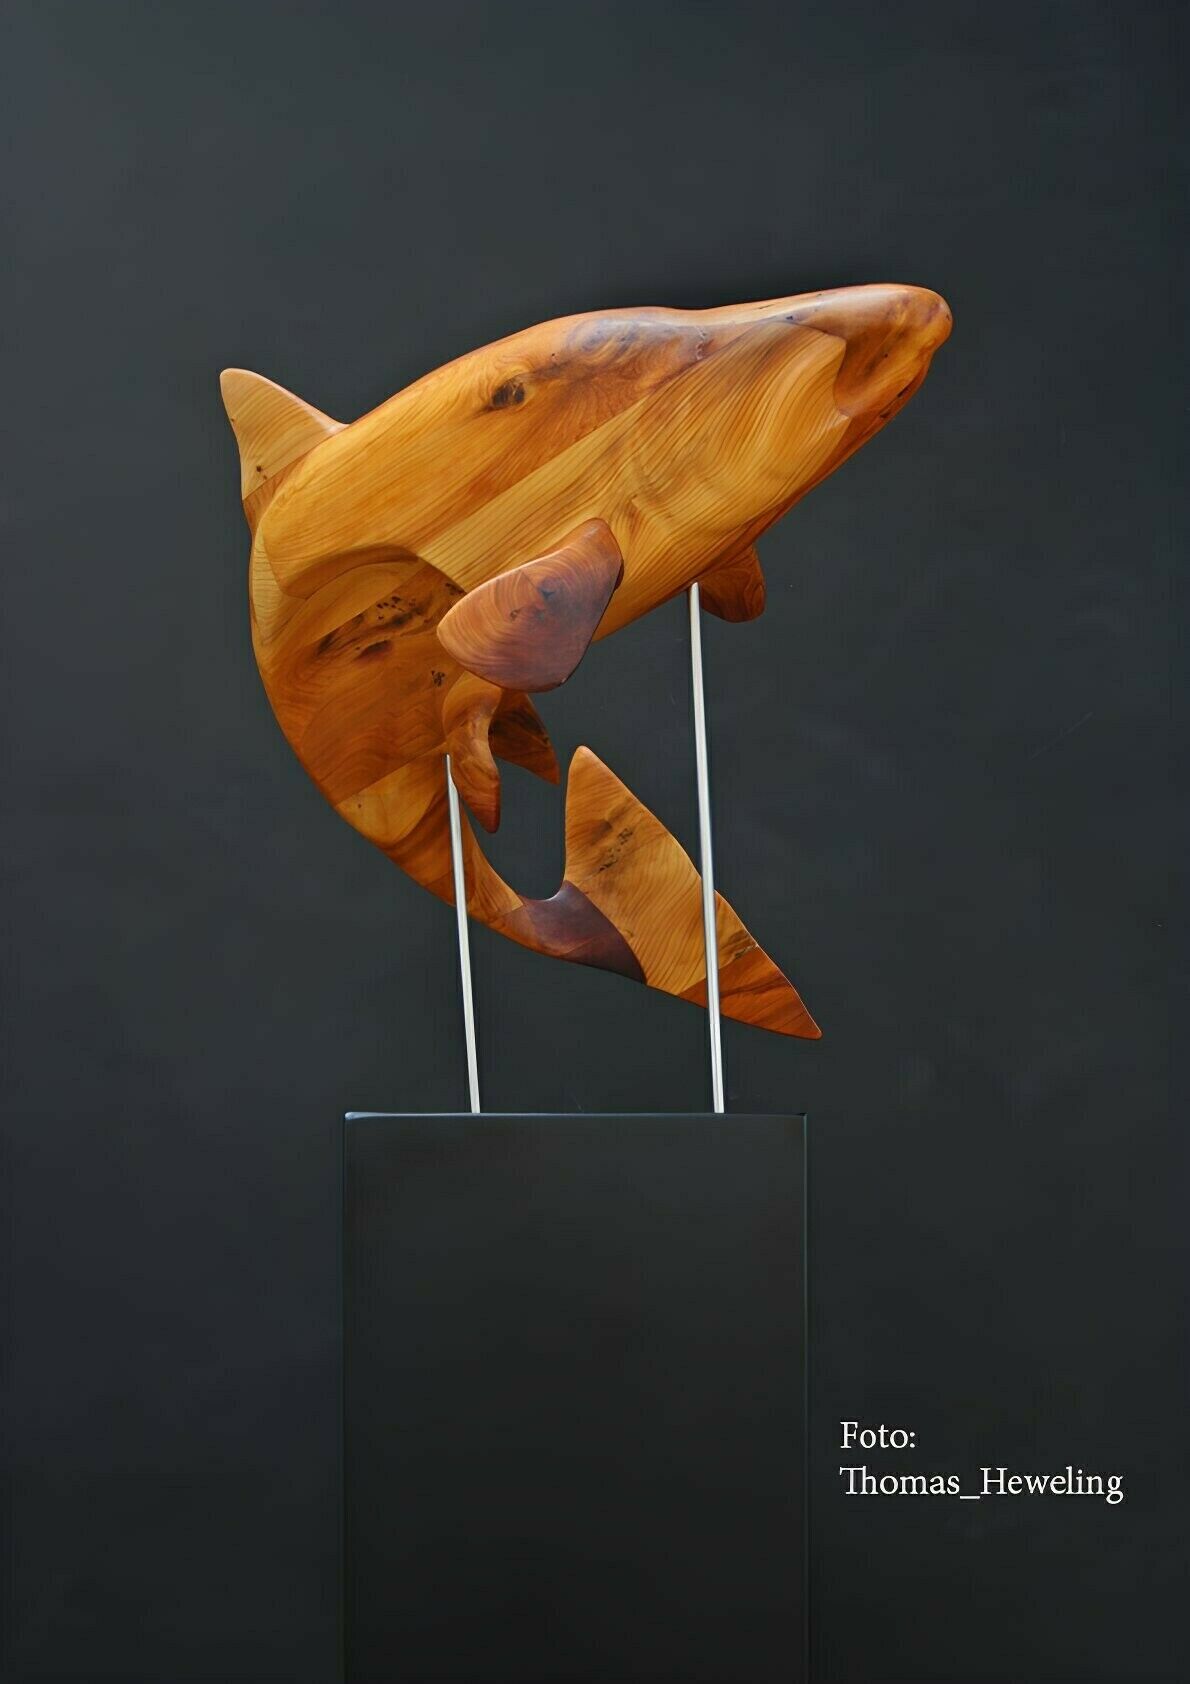 Sculpture "King Salmon" (2019)